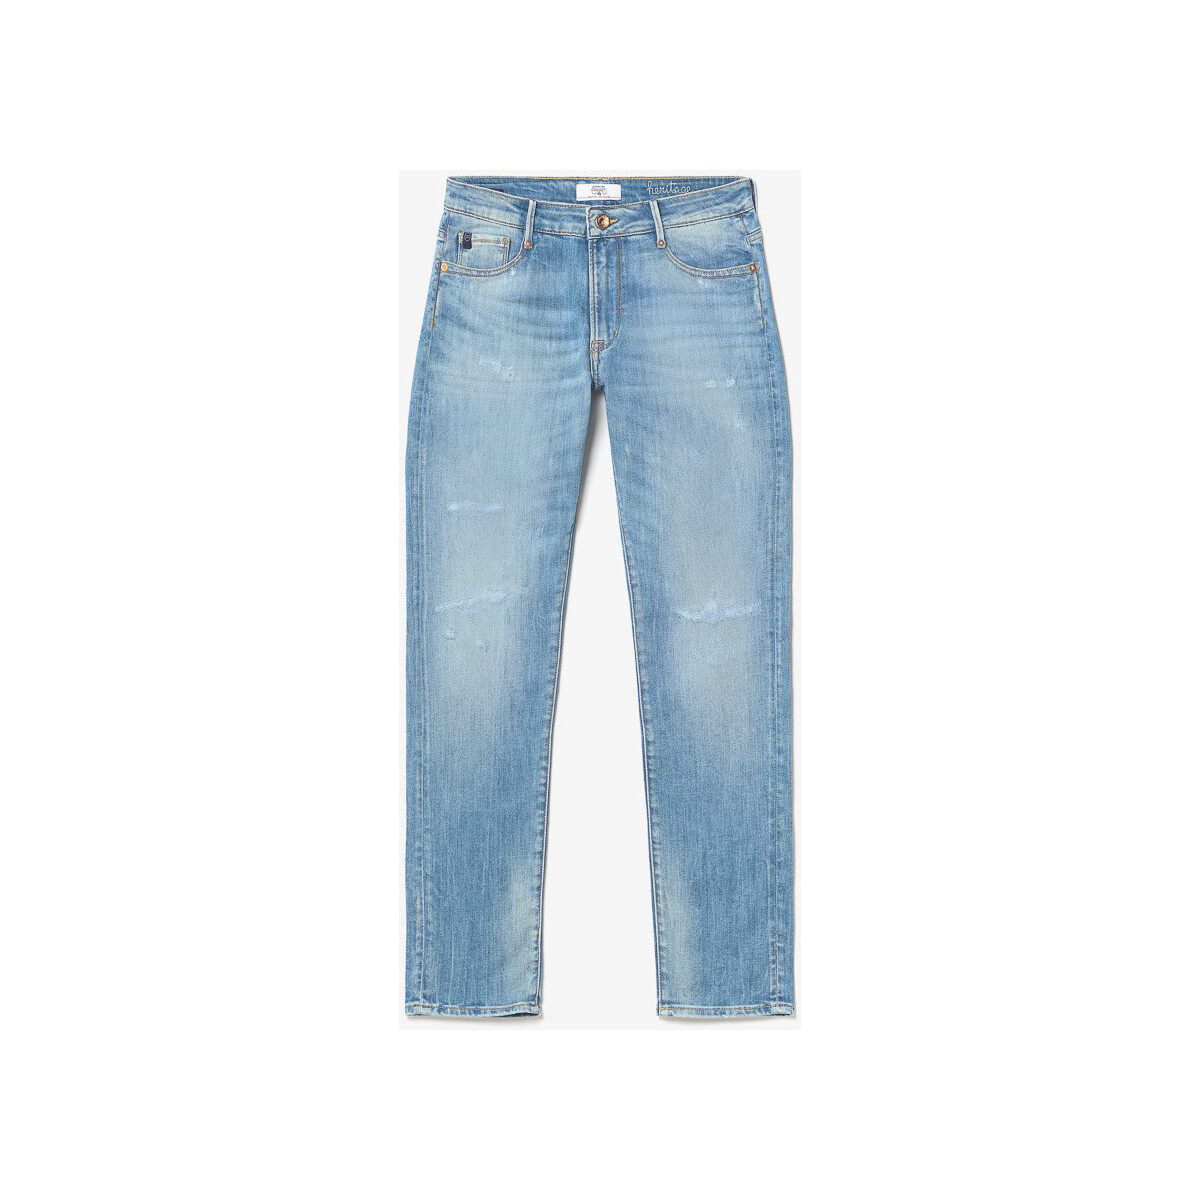 Le Temps des Cerises Bleu Sea 200/43 boyfit jeans destr